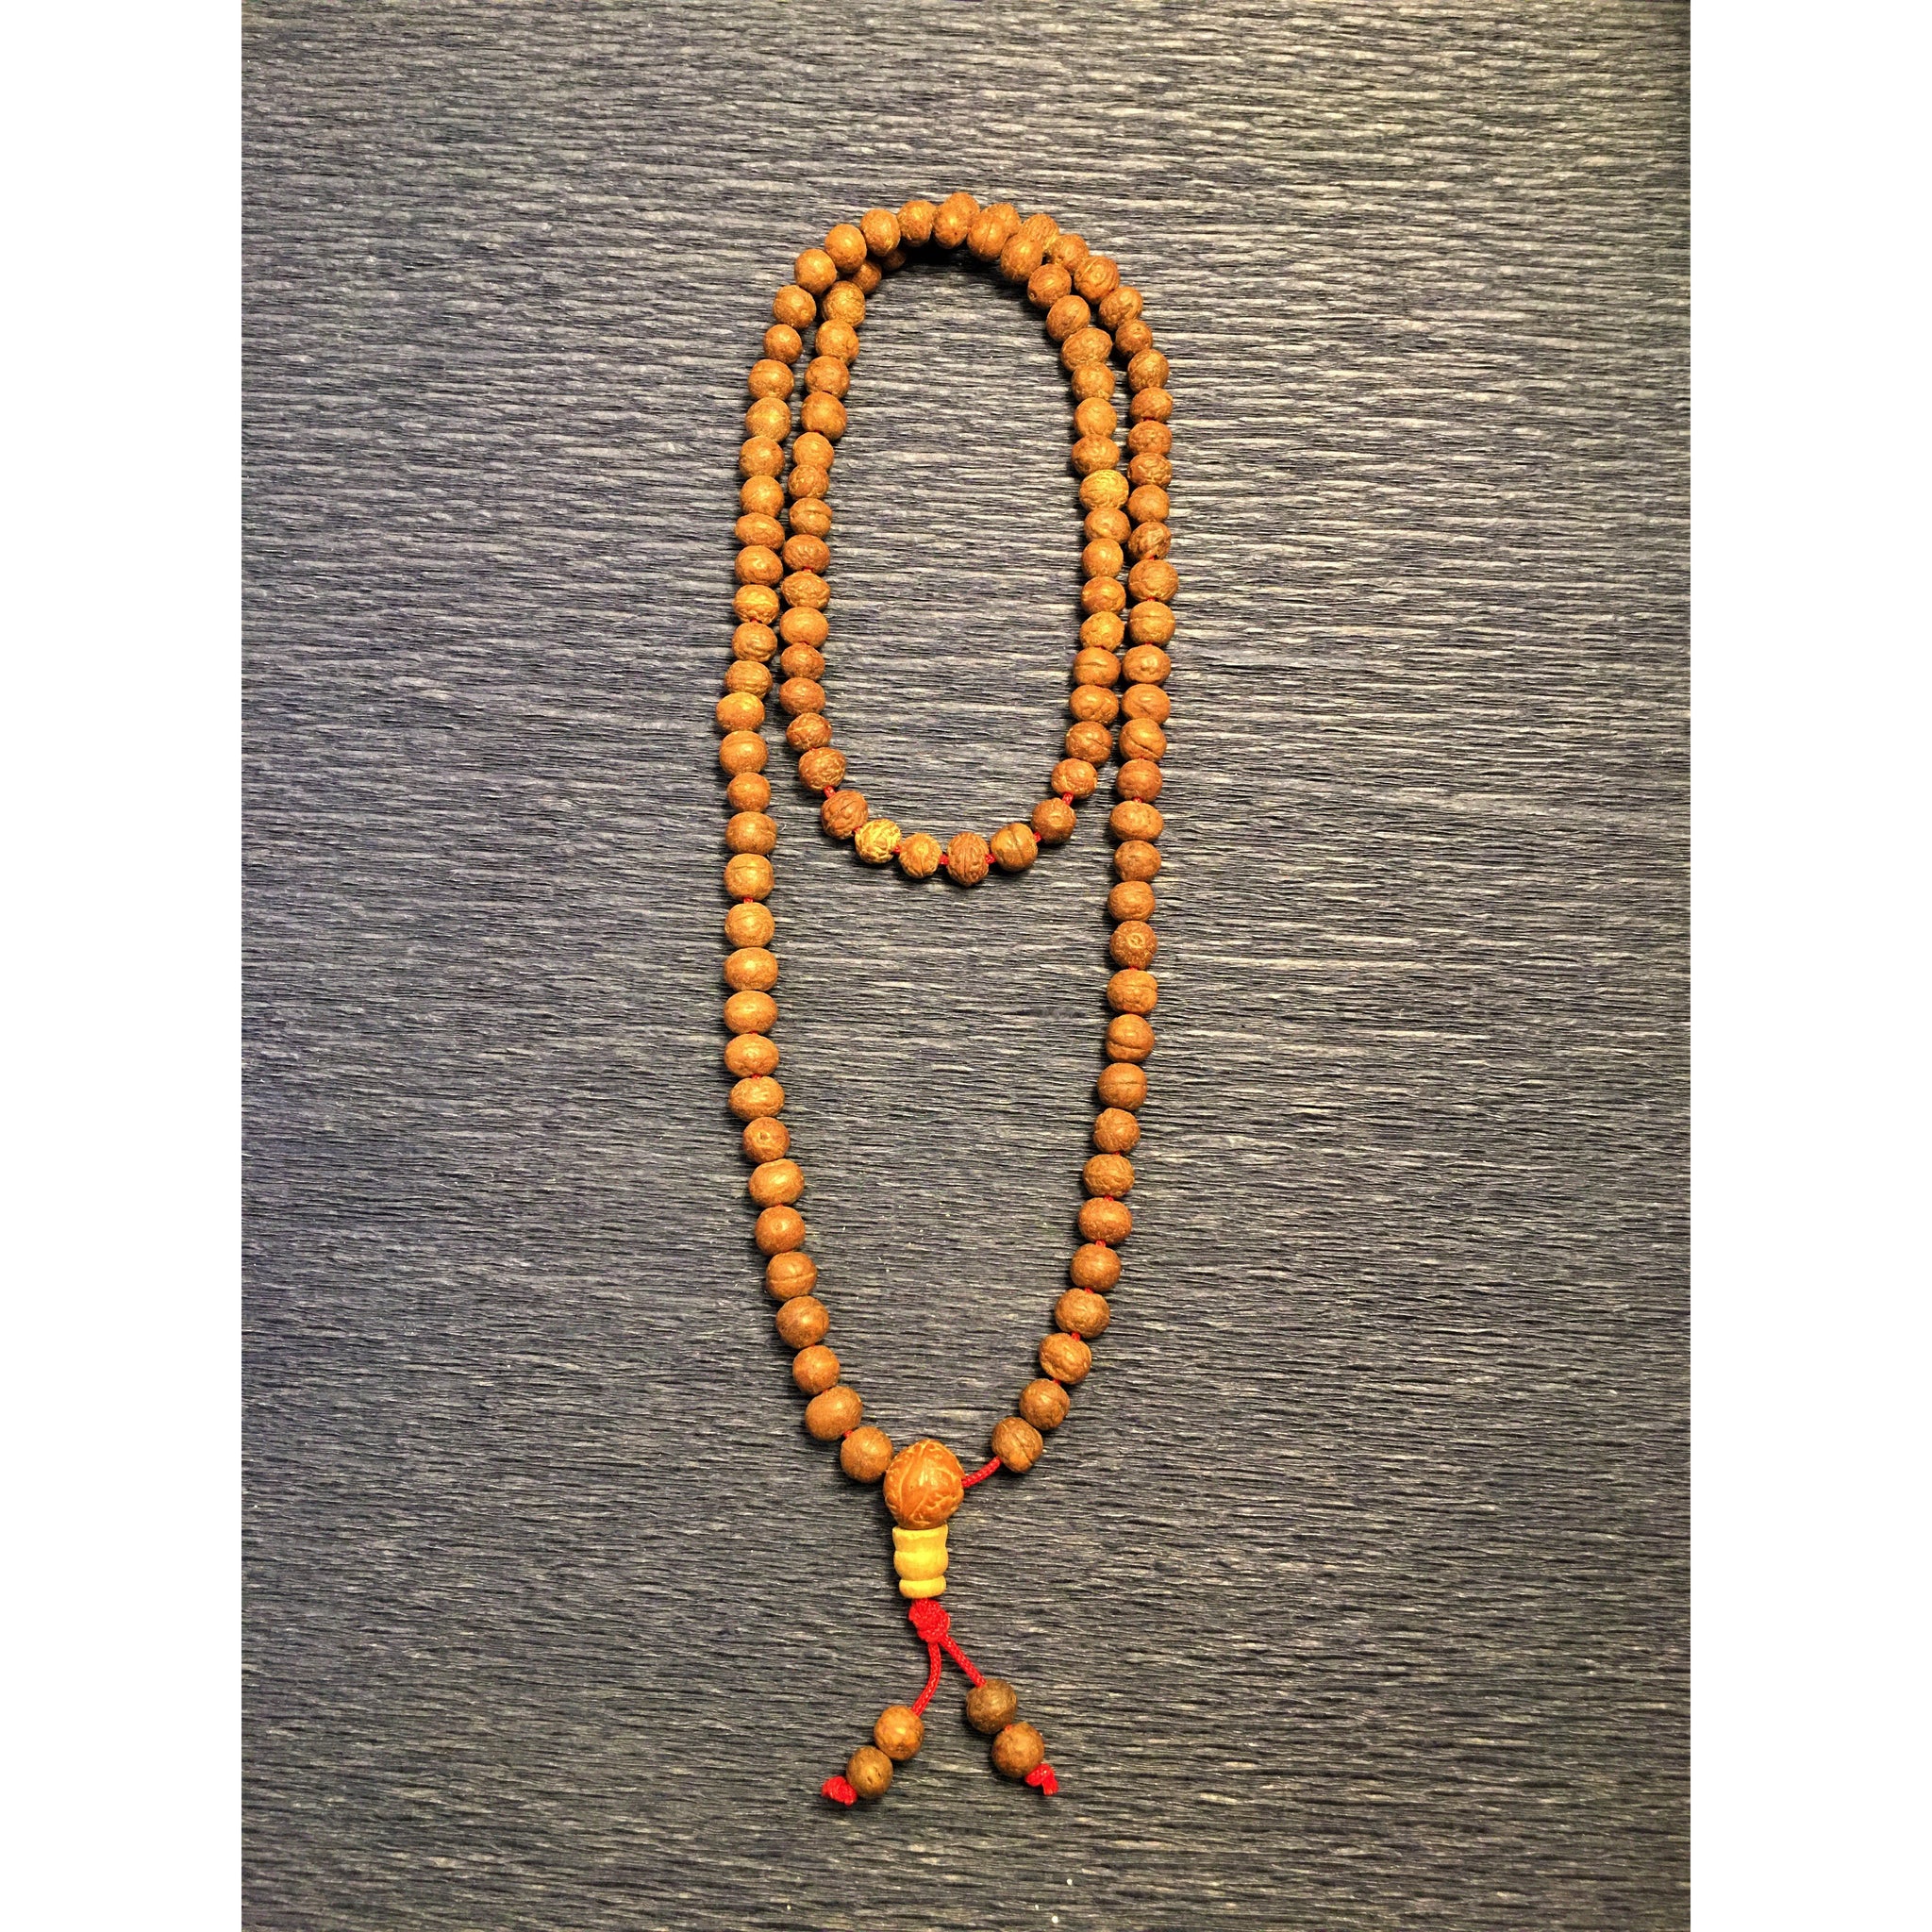 108 Wooden Beads Mala